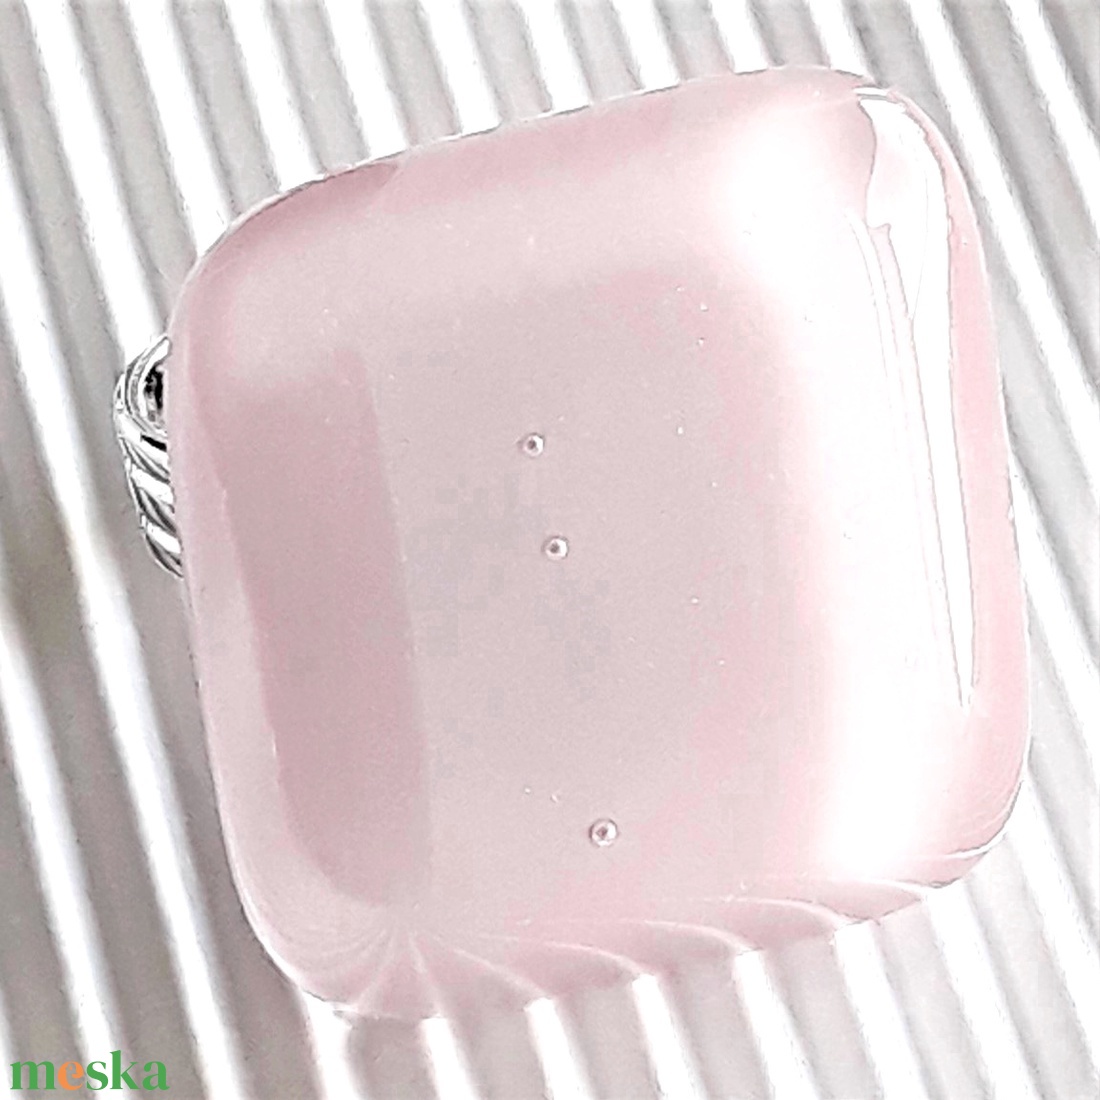 Sápadt rózsaszín üveg maxi gyűrű, üvegékszer - ékszer - gyűrű - statement gyűrű - Meska.hu